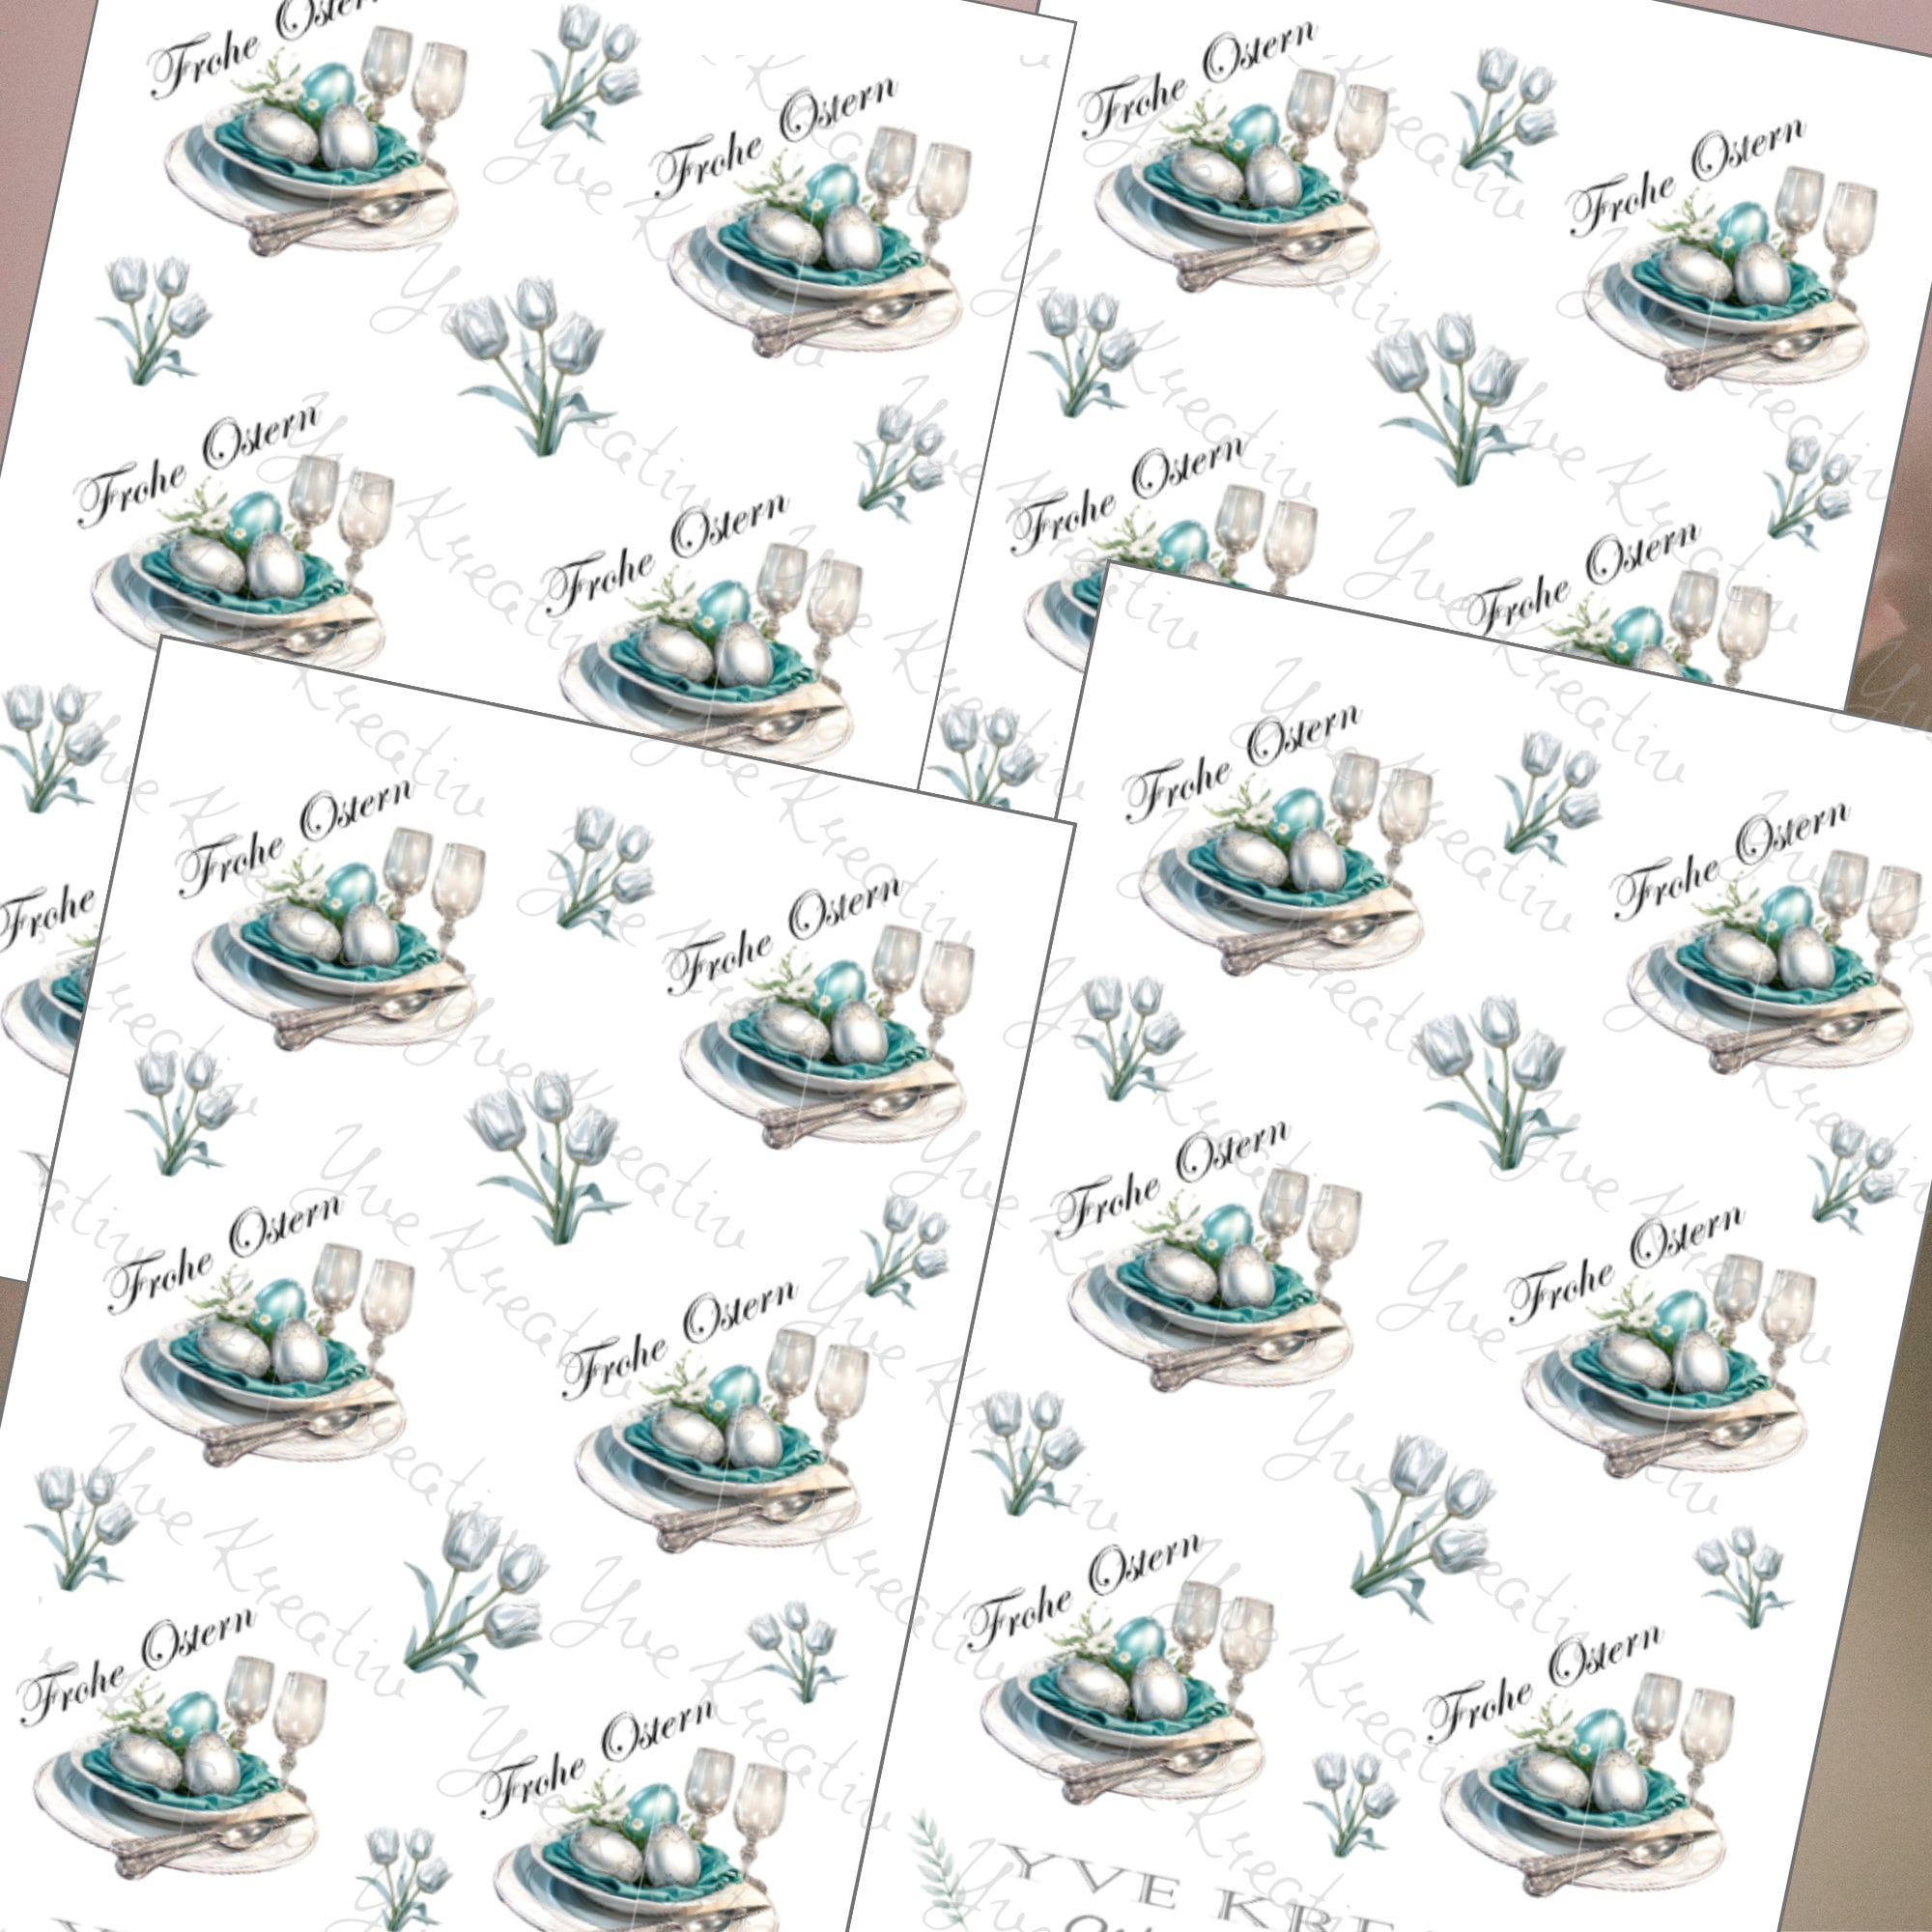 Sticker Bogen - Ostern | Sticker Set - Journal Sticker - Aufkleber in Weiß oder Transparent Stickerbogen 